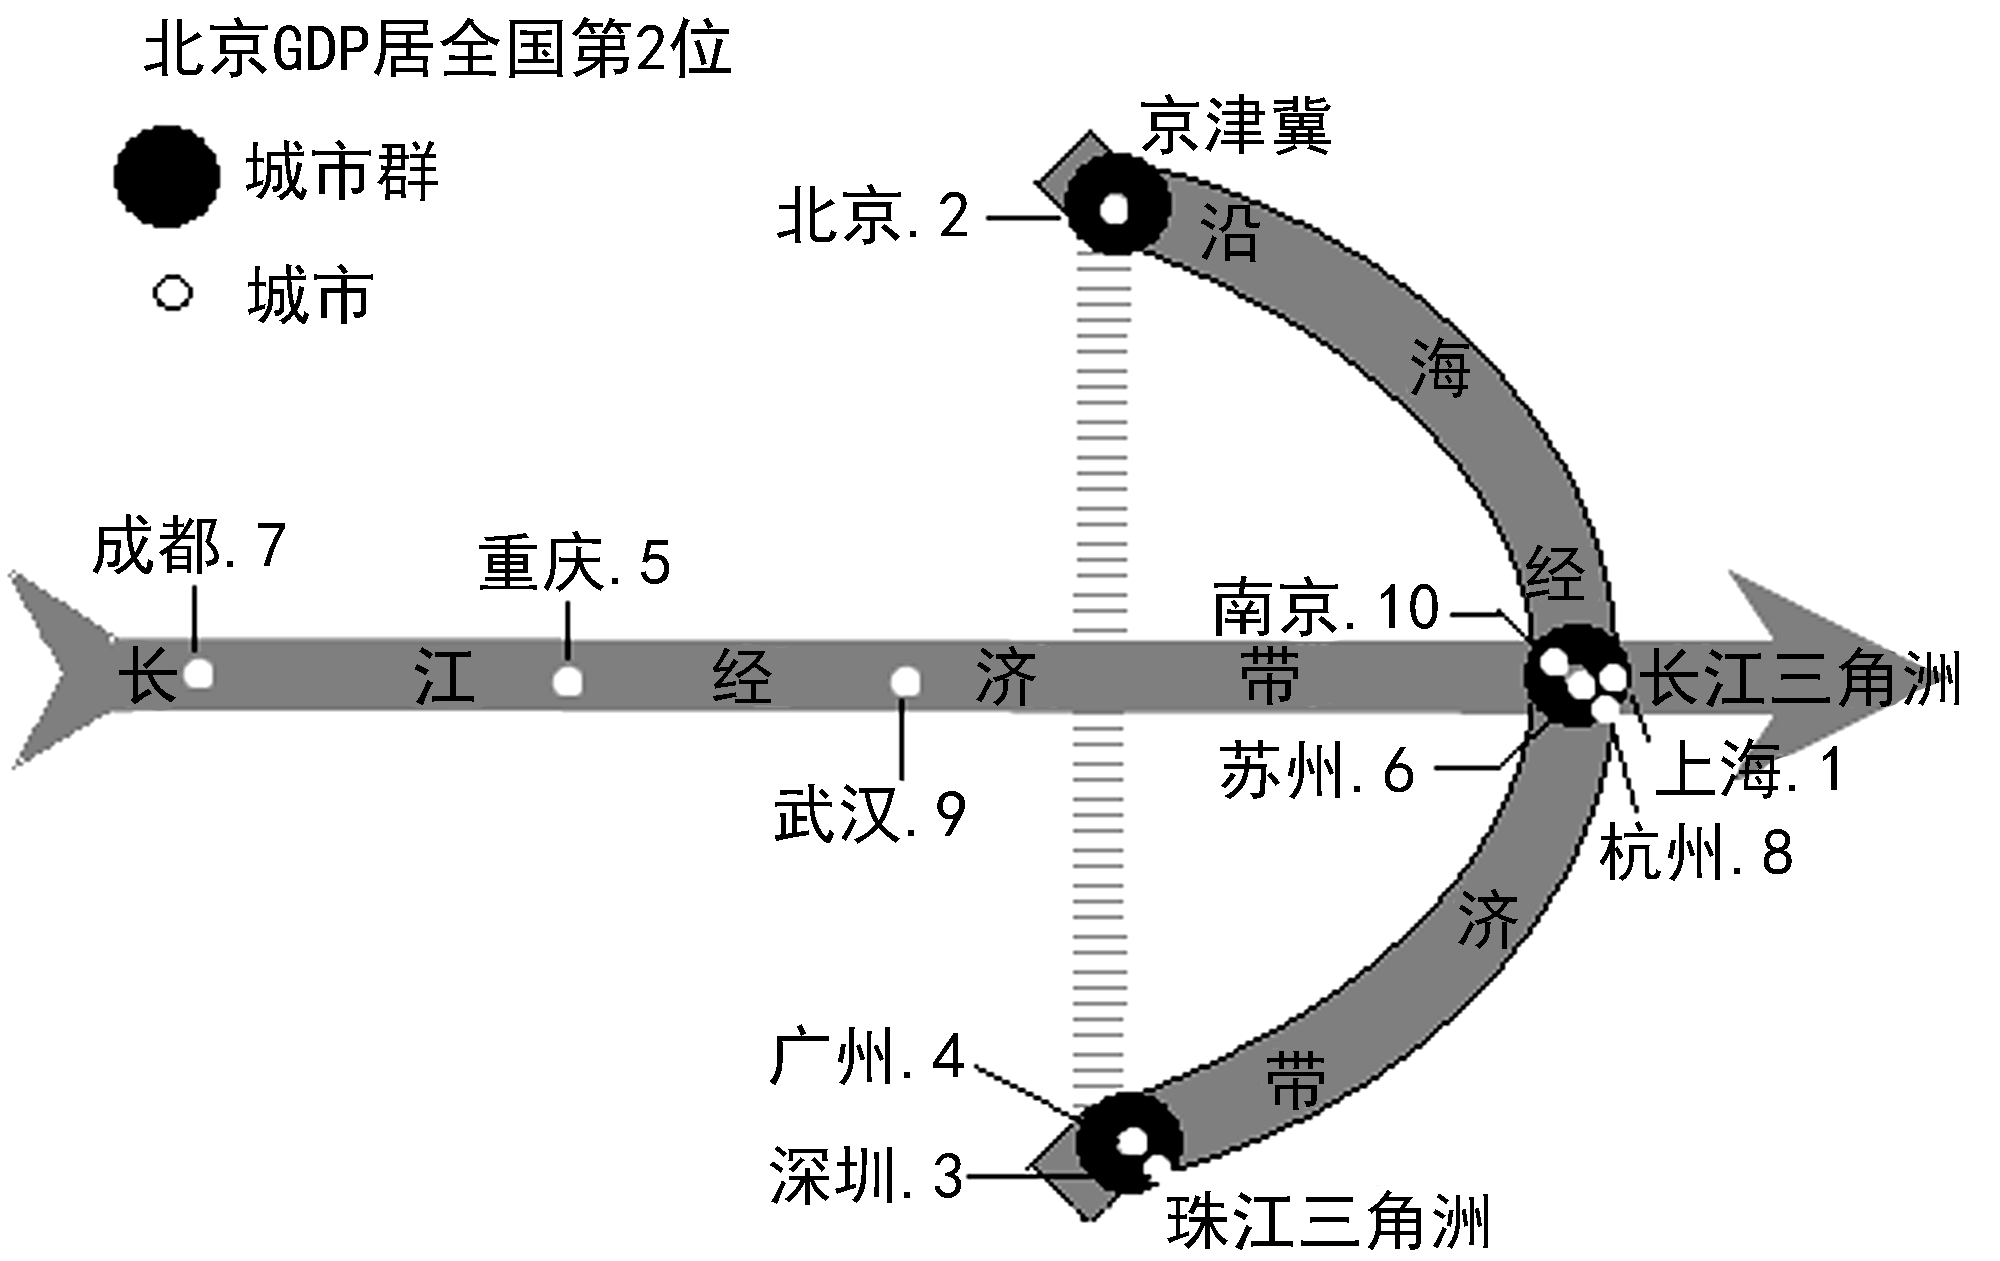 据此完成下面小题【小题1】长江对长江三角洲的巨大价